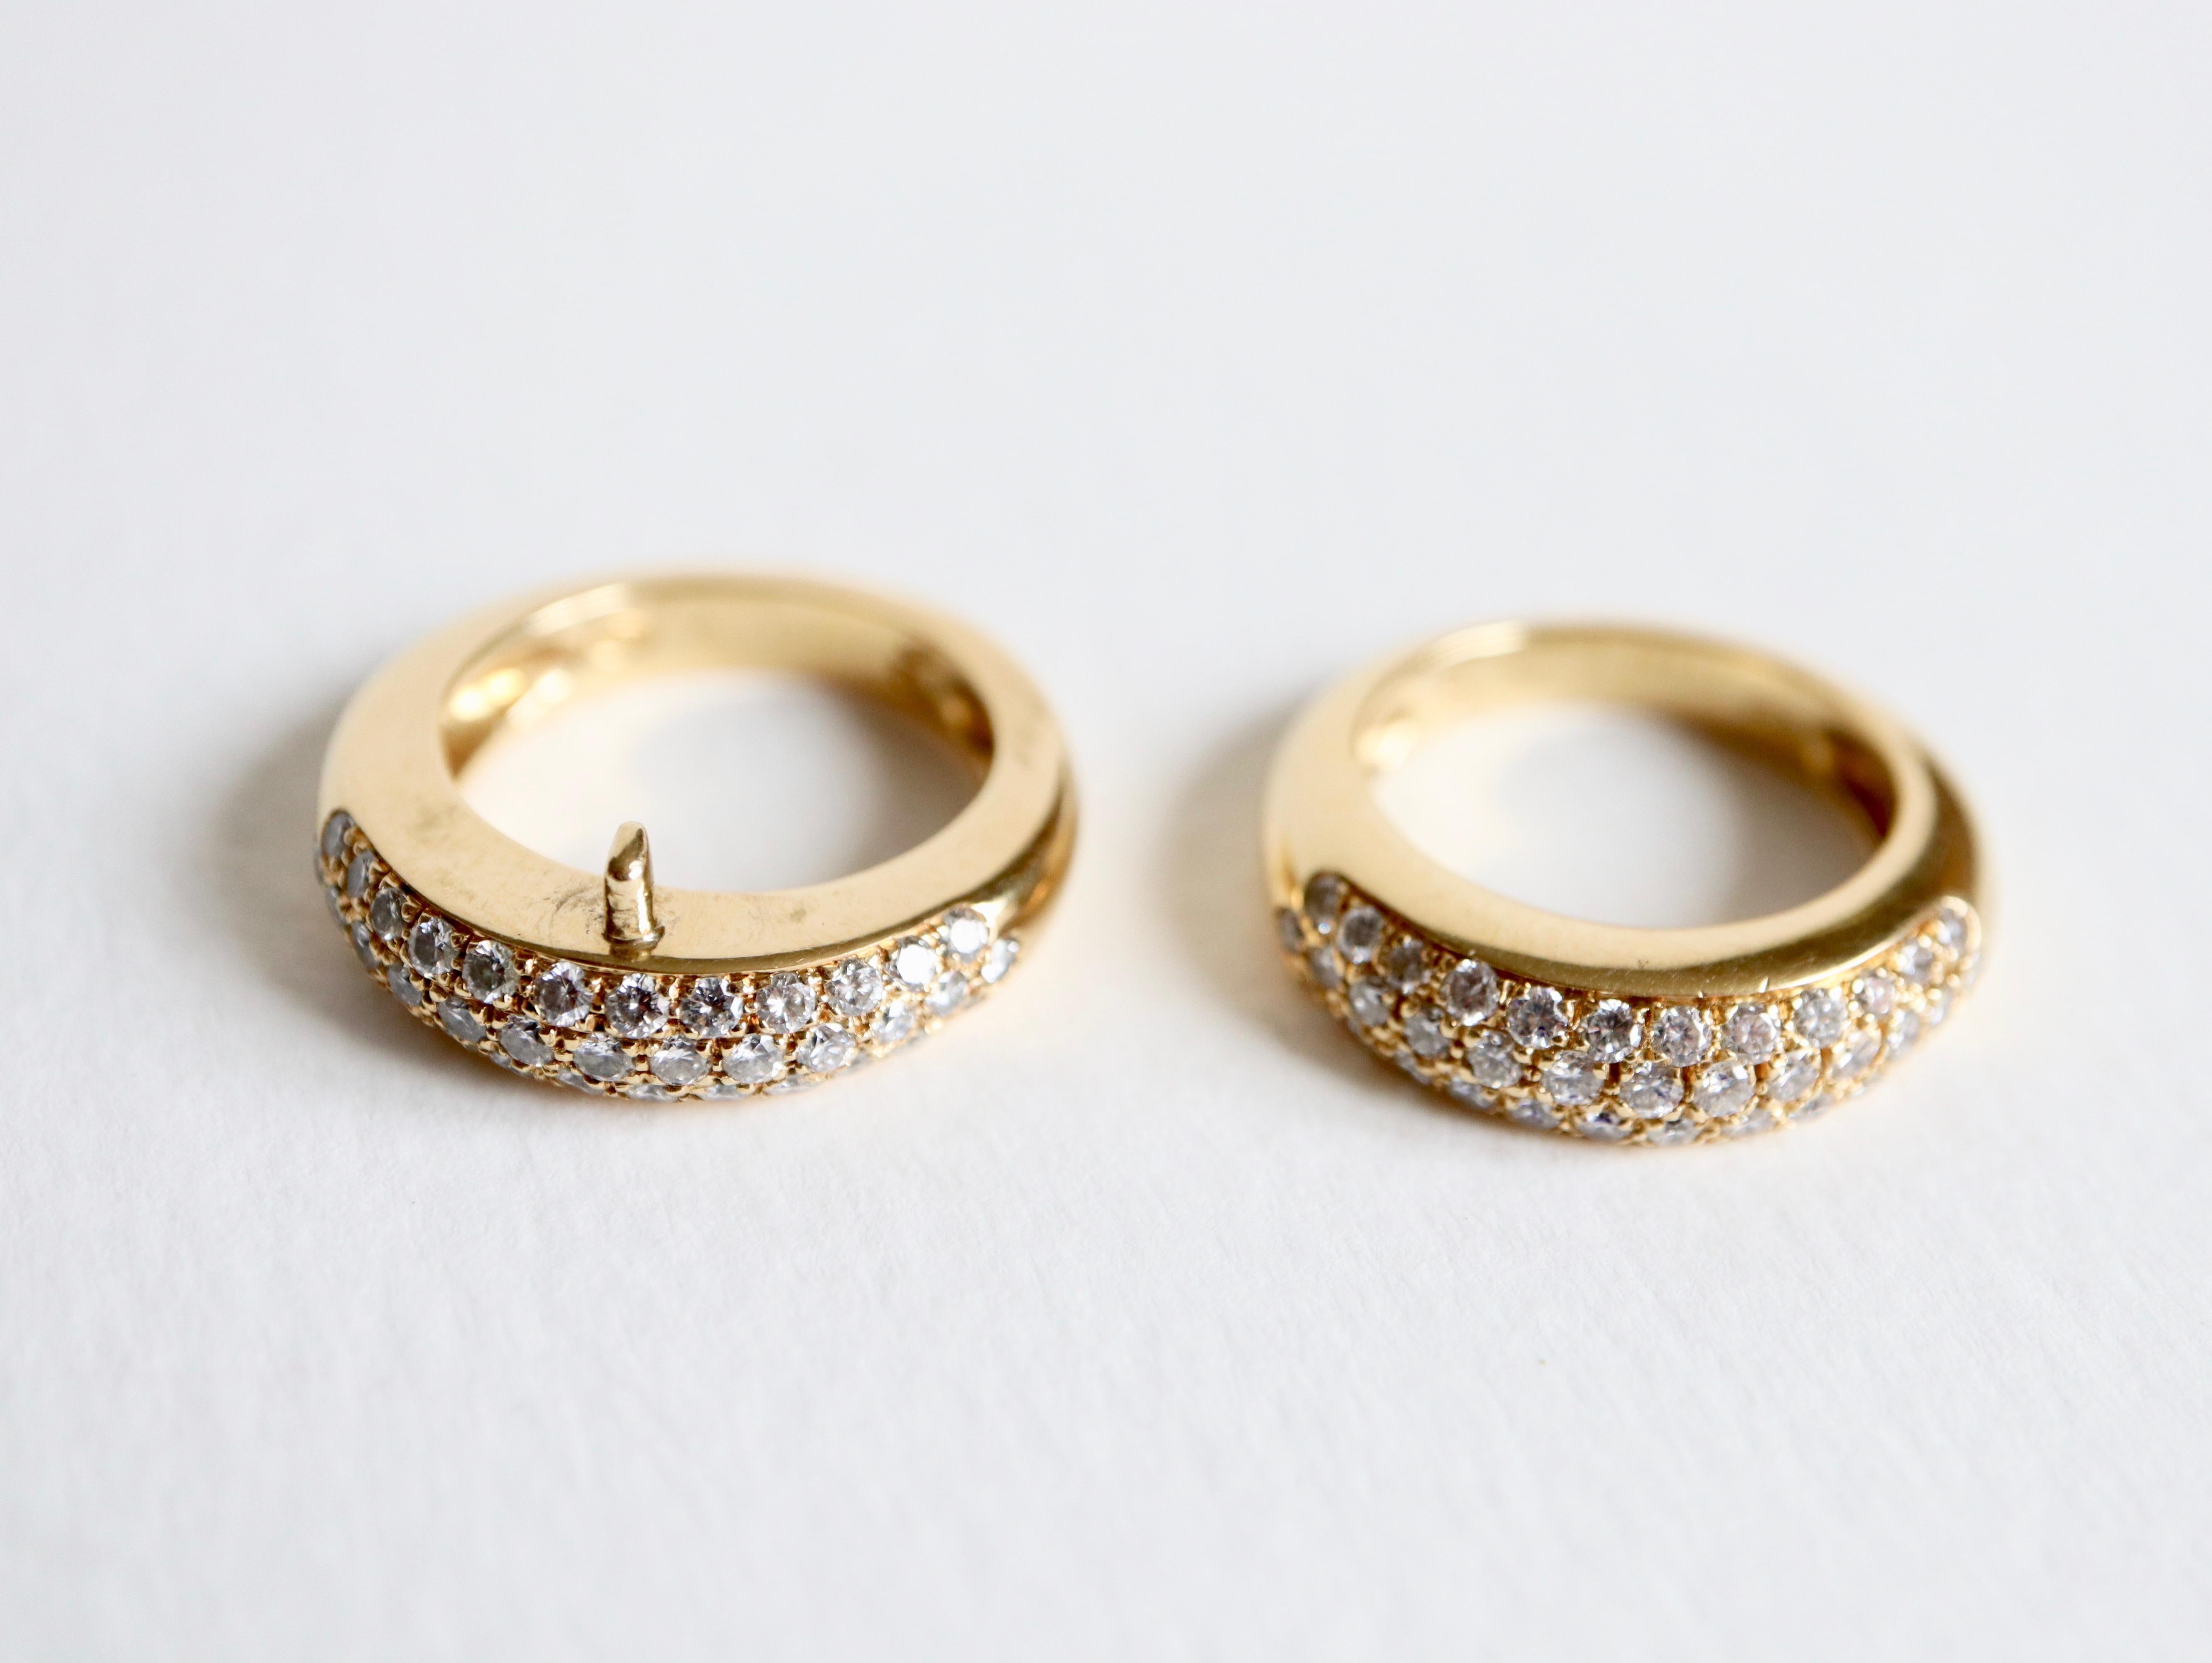 PIAGET Ring aus 18 Karat Gelbgold, bestehend aus zwei Ringen mit je 36 Diamanten mit einem Gewicht von etwa 0,7 Karat, die sich in zwei unabhängige Bänder aufteilen.
Signiert PIAGET 1994 und nummeriert 
Durchmesser: 51 Größe: 16
Breite: 1,2 cm für 2